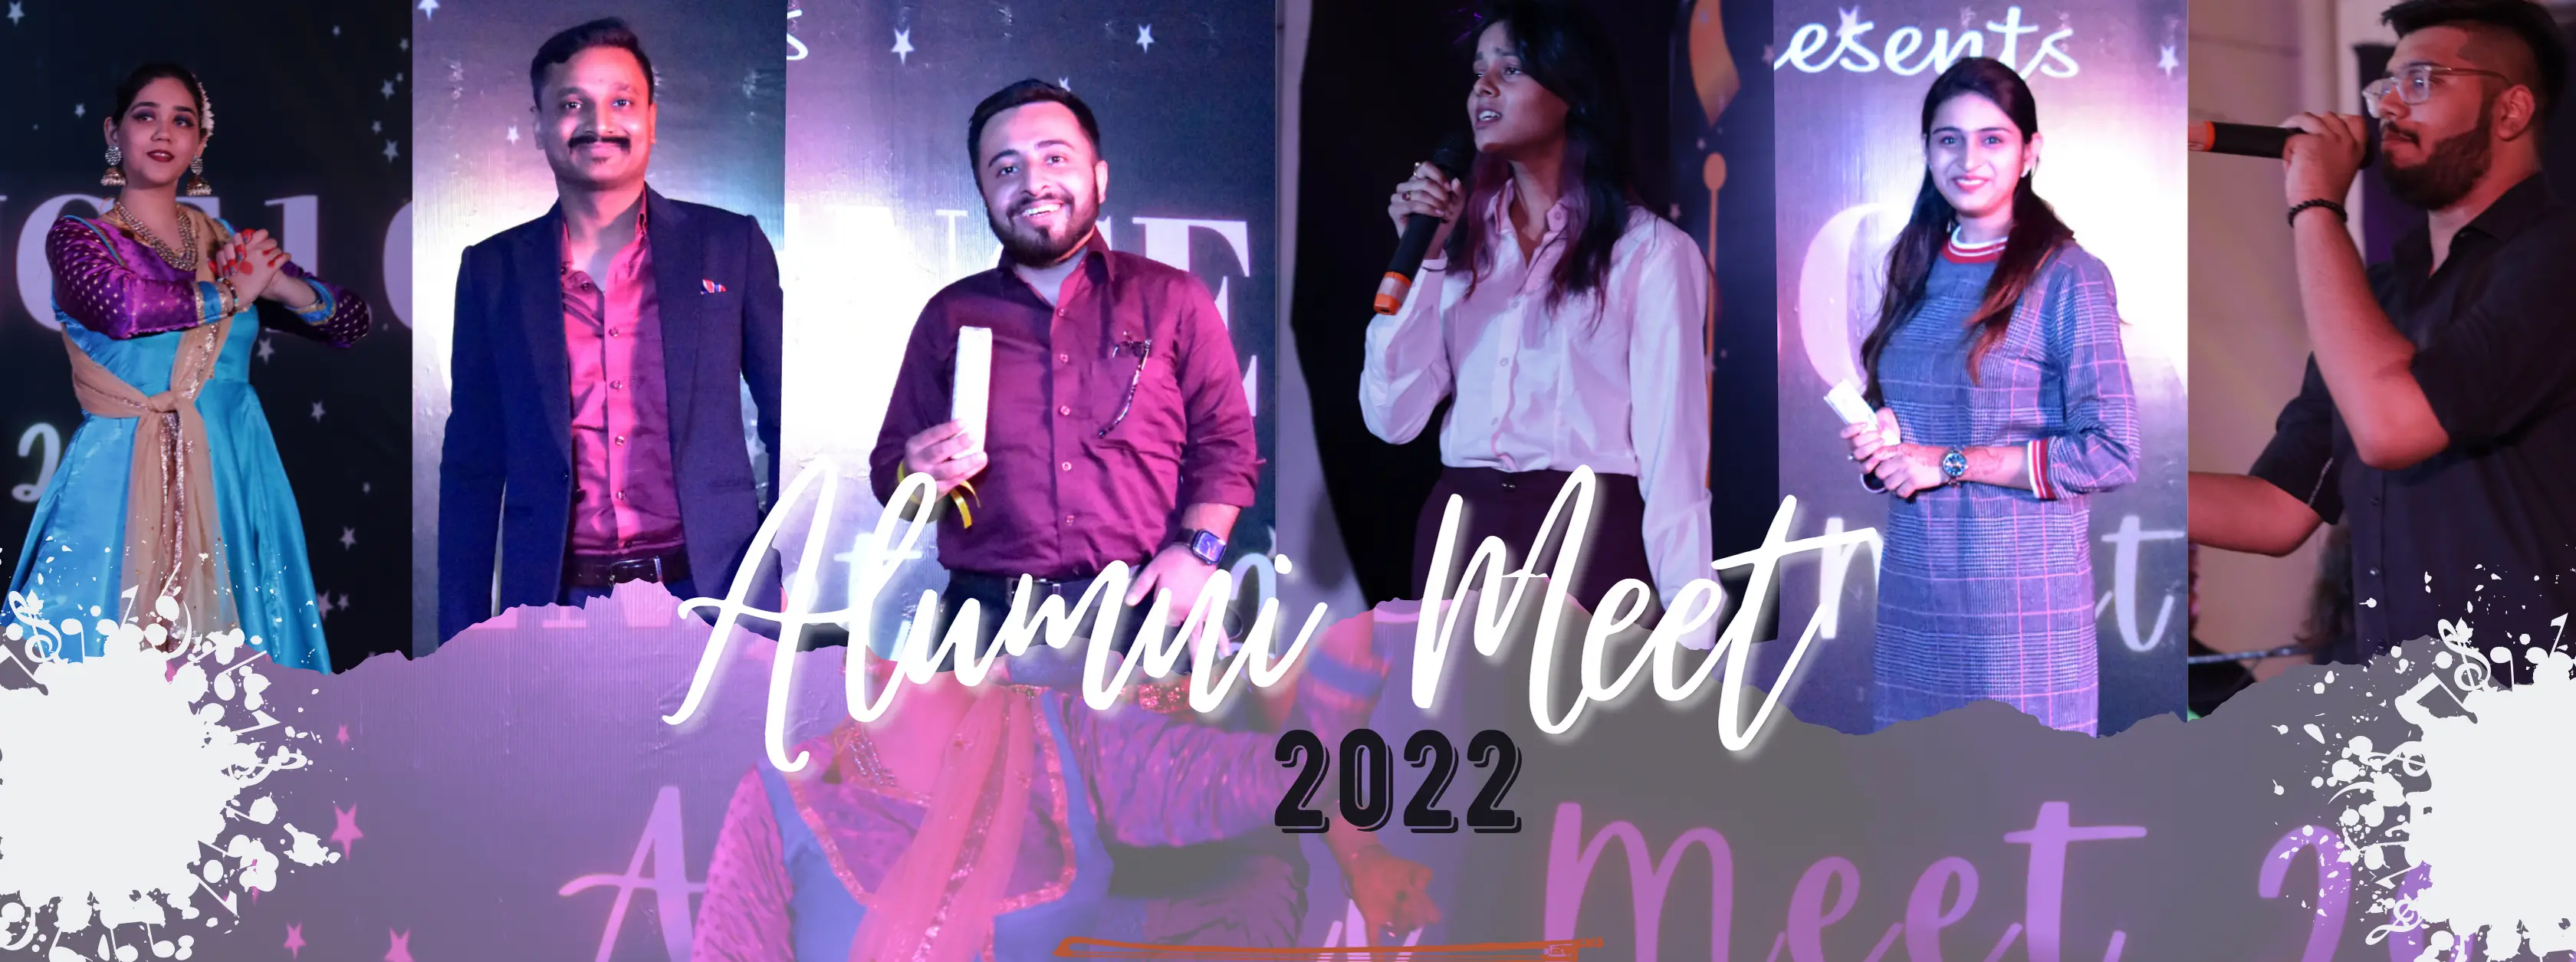 Alumini Meet 2022